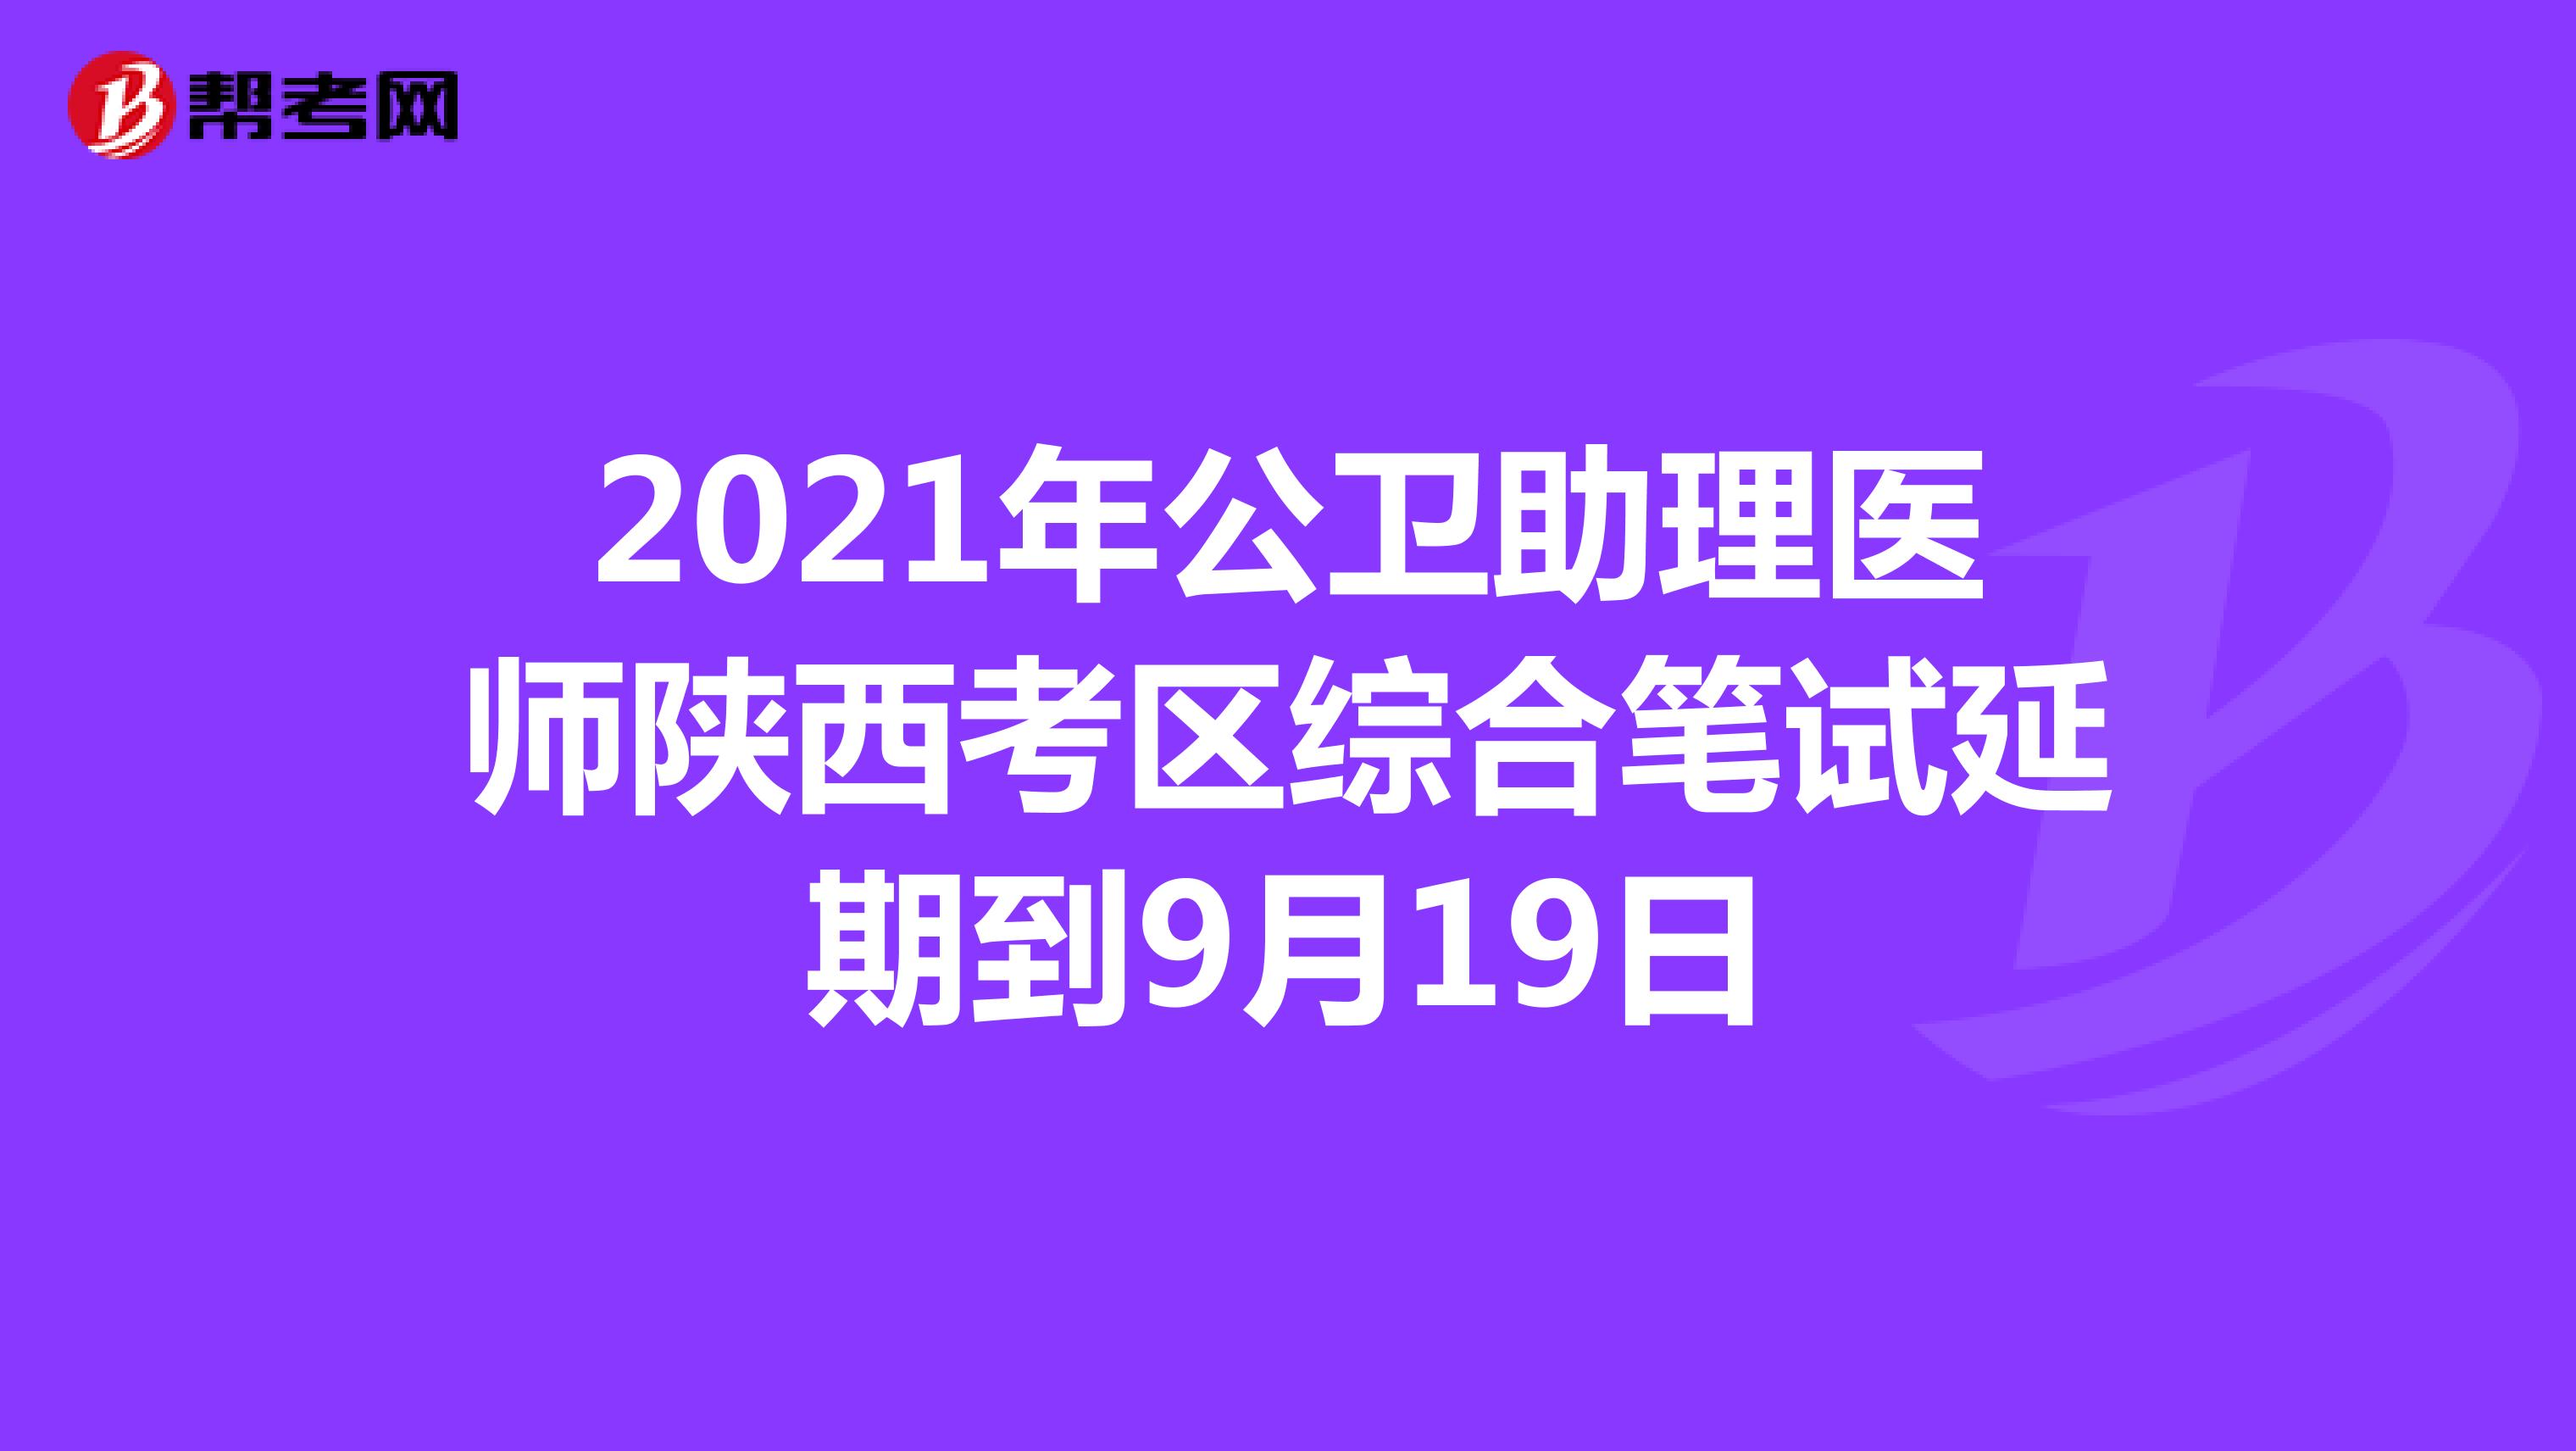 2021年公卫助理医师陕西考区综合笔试延期到9月19日